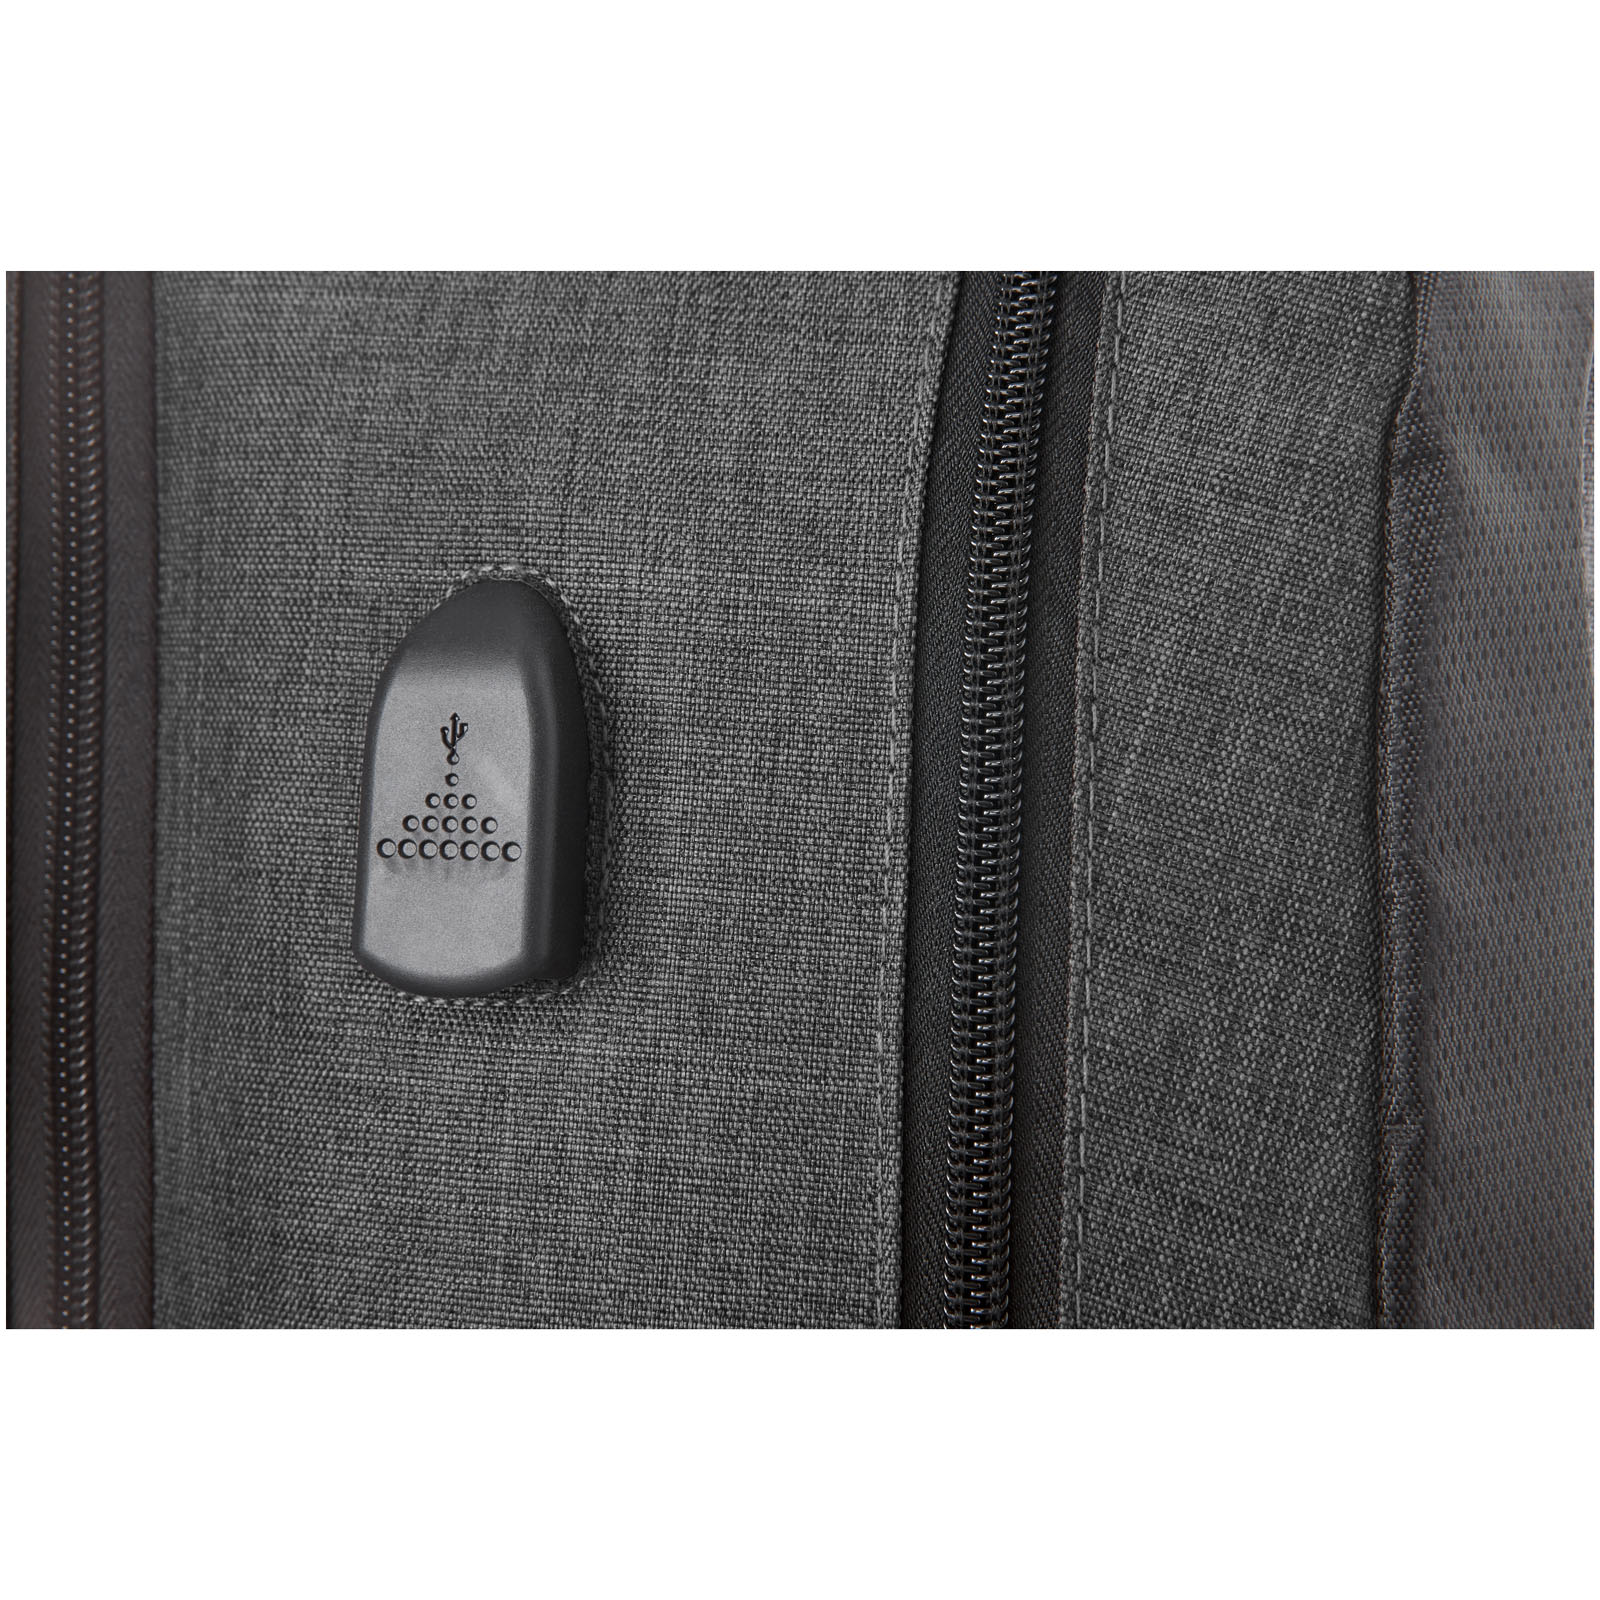 Advertising Laptop Backpacks - Overland 17